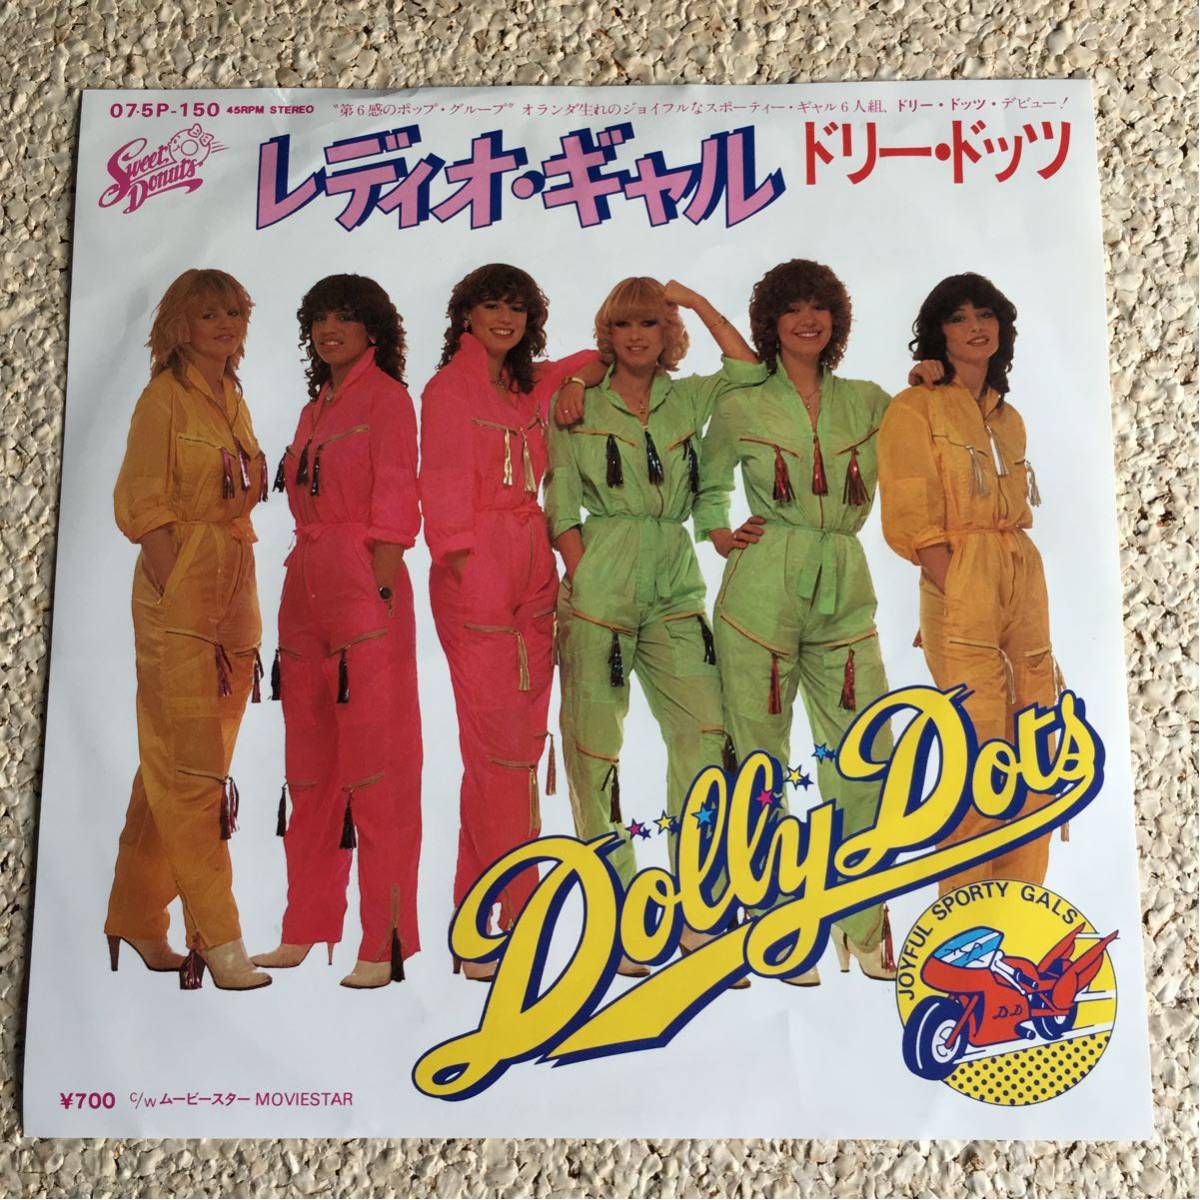 ドリー・ドッツ DOLLY DOTS / レディオギャル / ムービースター / レコード EP_画像1